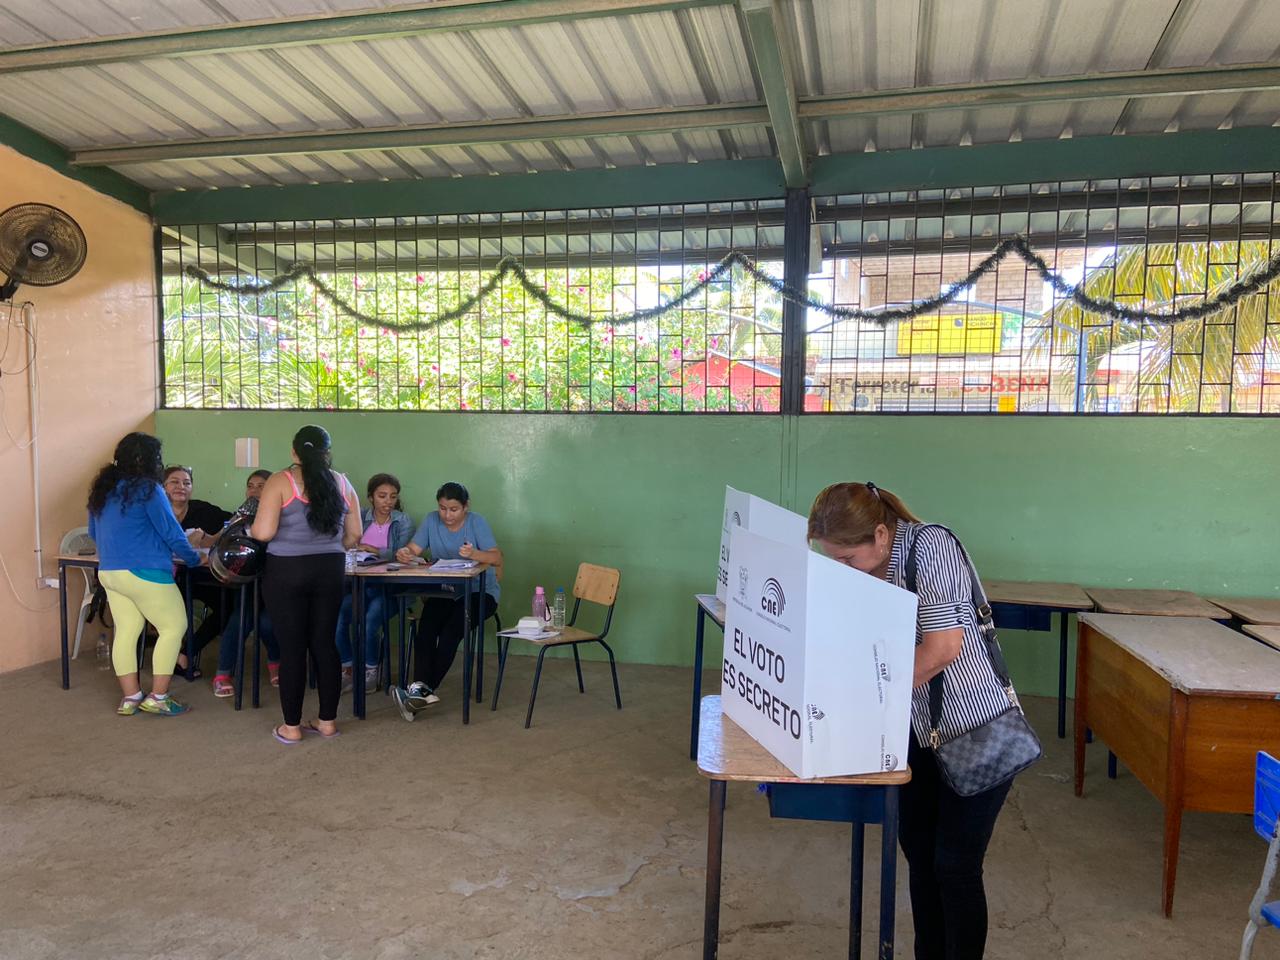 El movimiento político Izquierda Democrática obtuvo el primer lugar en las elecciones de la parroquia Sosote.